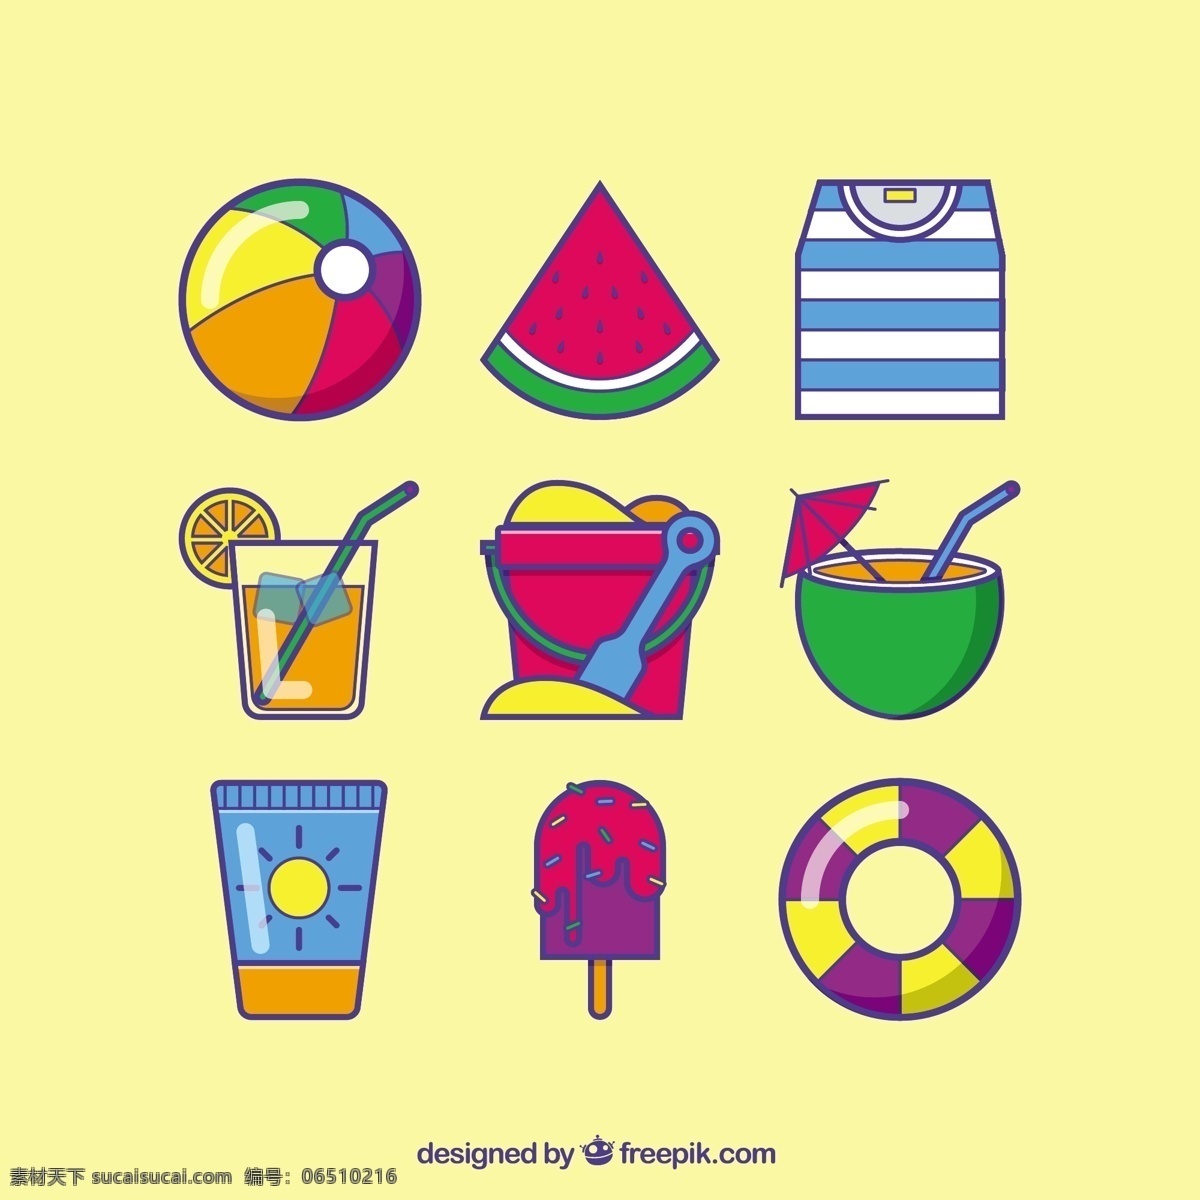 多彩 风格 夏季 图标 夏天 海滩 t恤 冰淇淋 衬衫 鸡尾酒 冰 五颜六色 球 夏天海滩 流行 西瓜 奶油 柠檬水 浮球 黄色